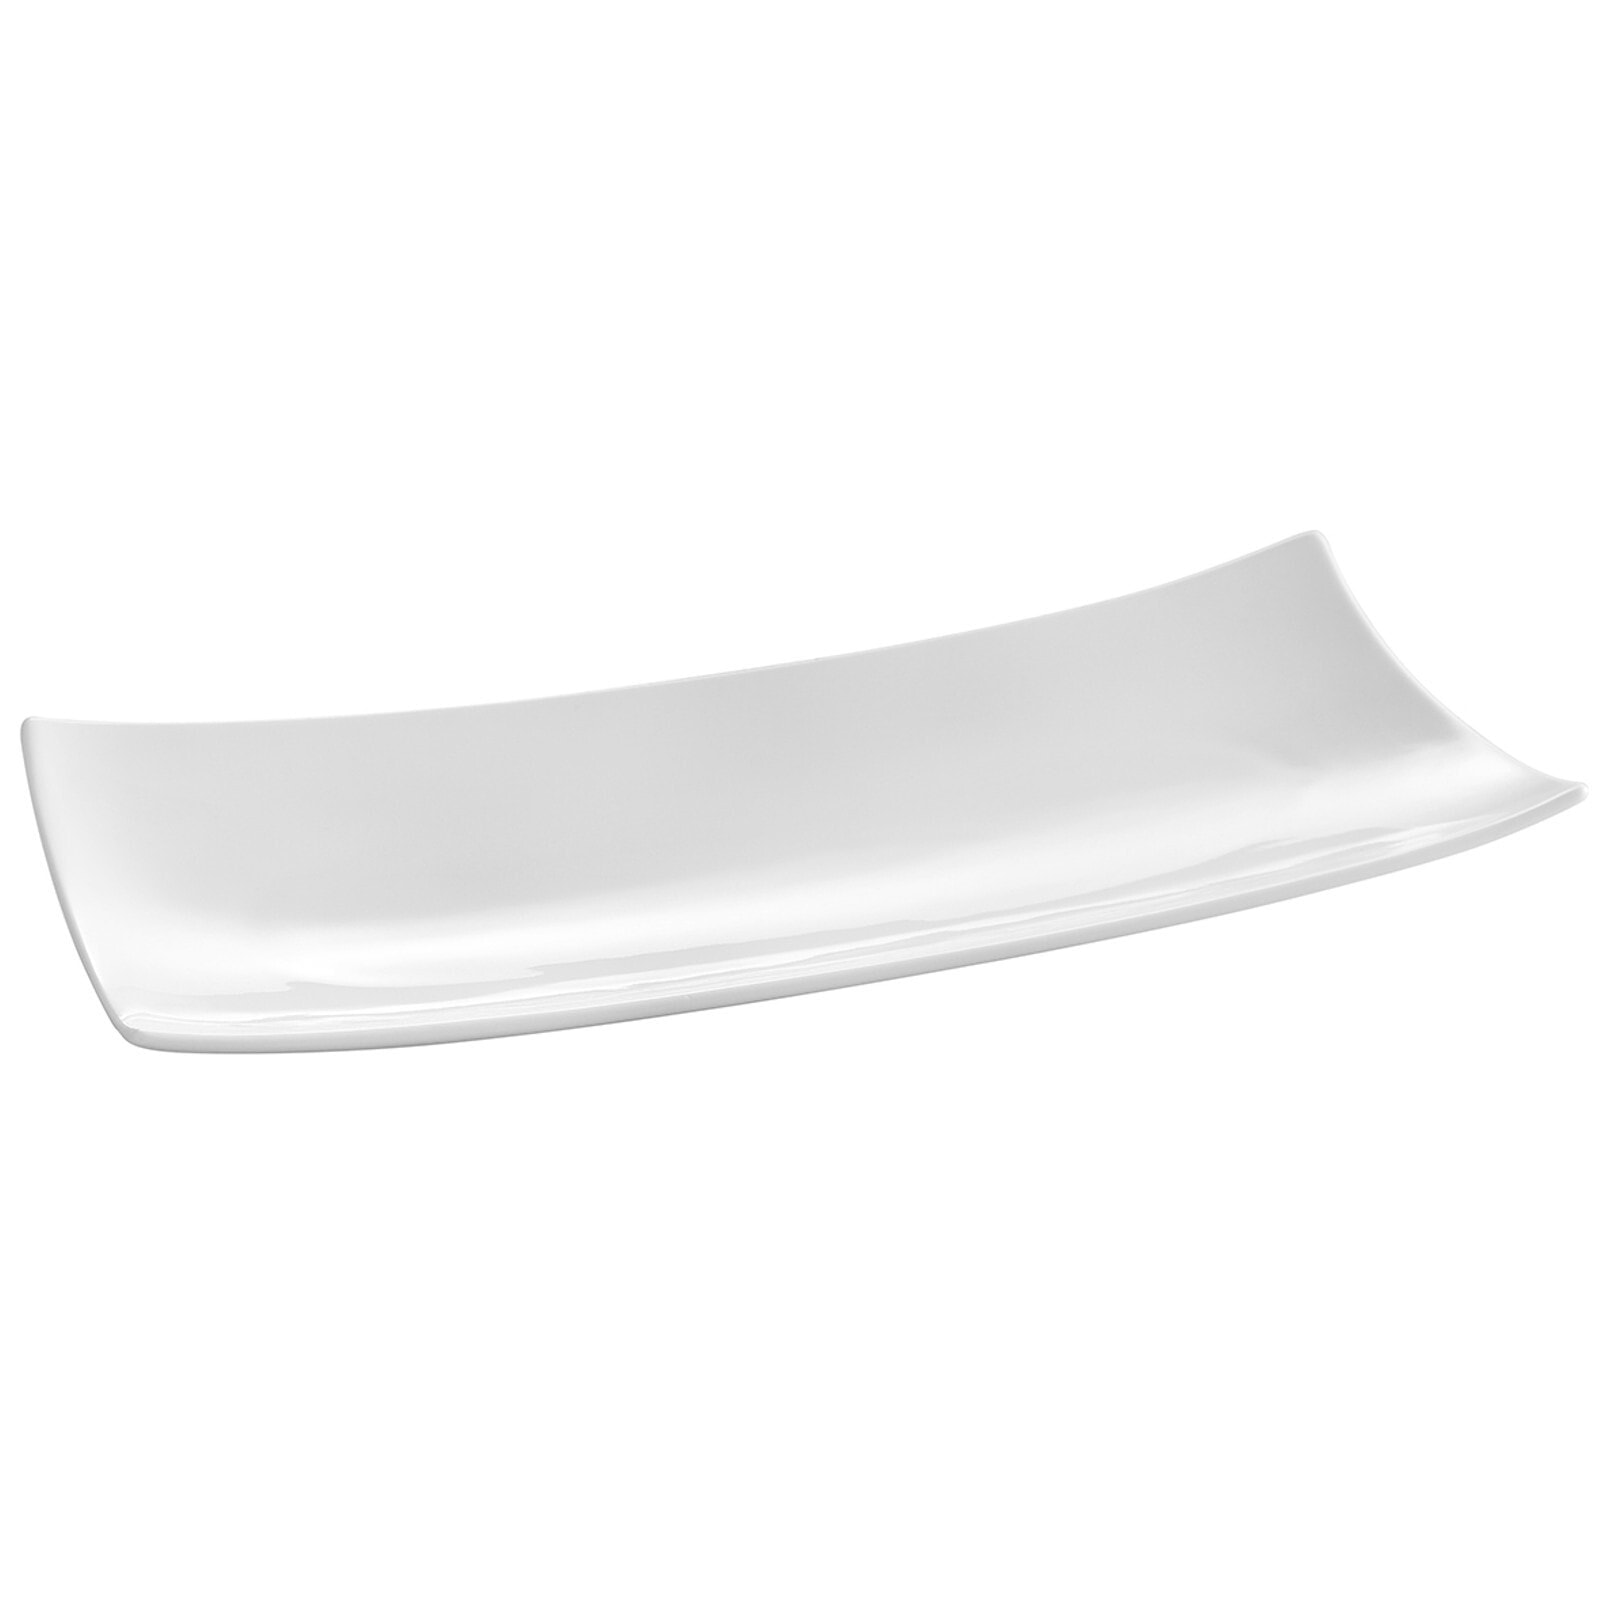 Decorative rectangular platter BARKA 218x105mm white porcelain - Hendi 785546